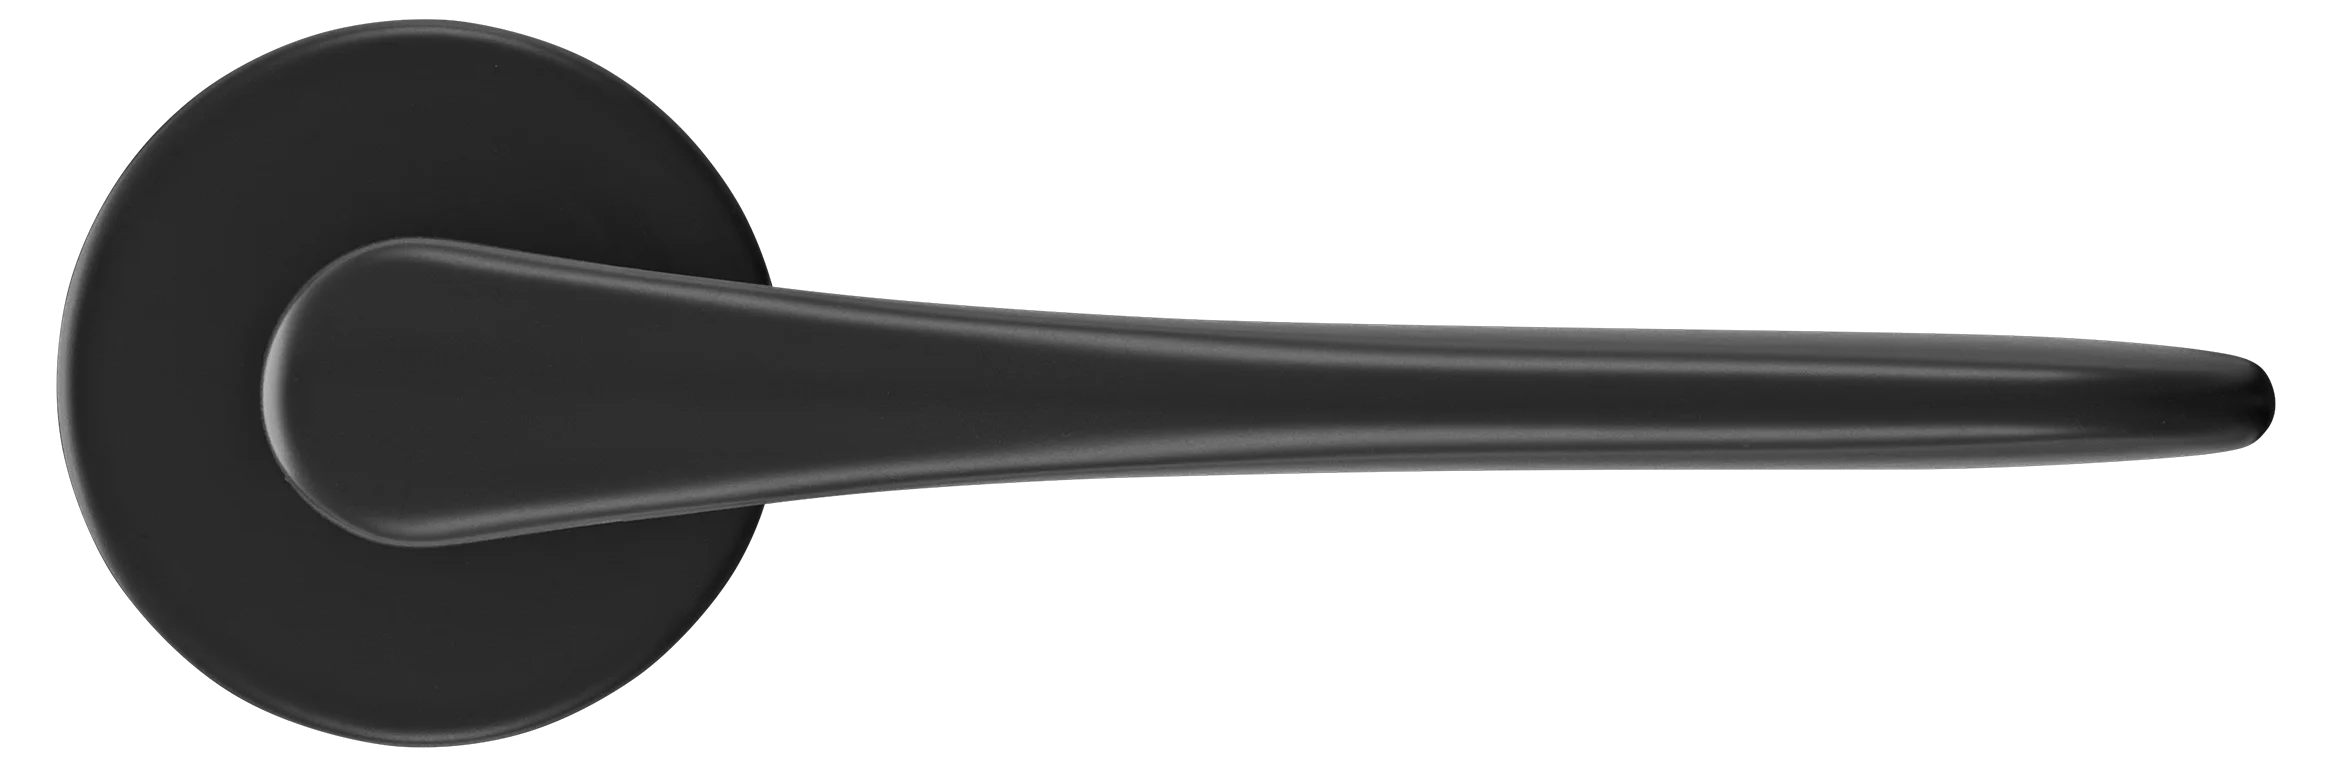 AULA R5 NERO, ручка дверная на розетке 7мм, цвет -  черный фото купить в Самаре